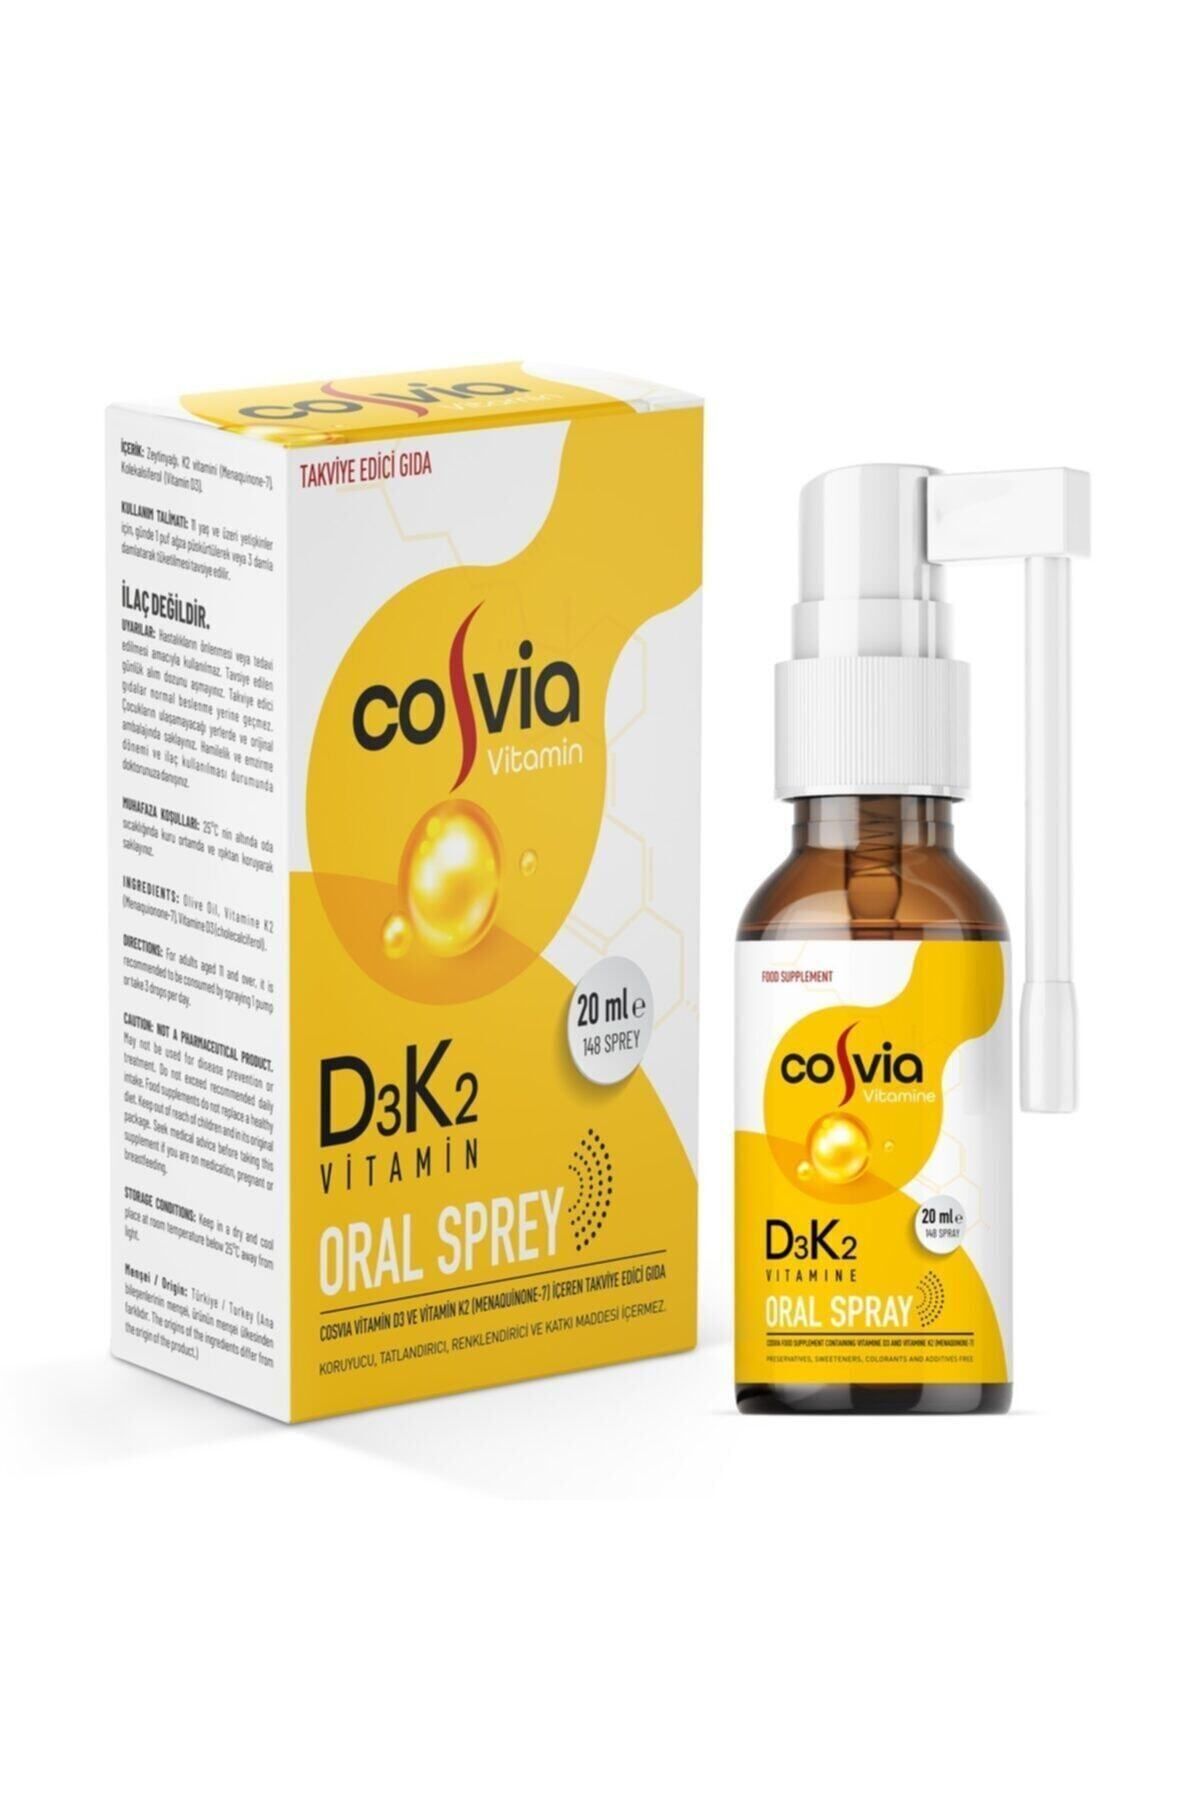 COSVIA Vitamin D3-k2 (menaquinone-7) Oral Sprey